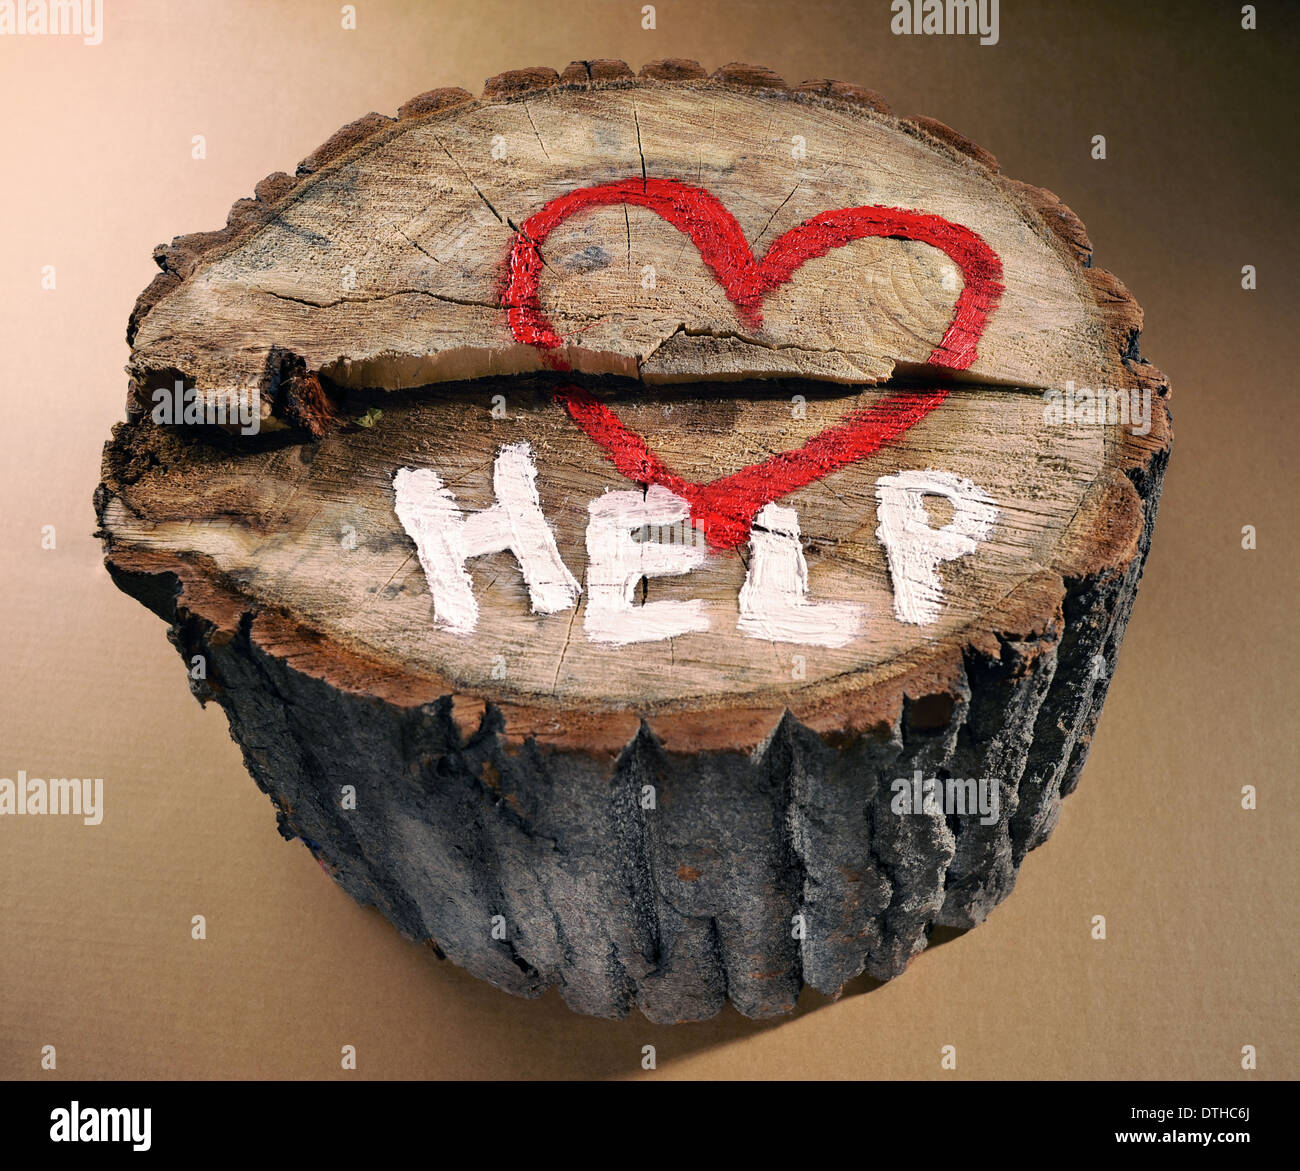 Contribuire a proteggere la natura, fermare la deforestazione. Cuore rosso e la parola 'help' dipinta su un tronco di albero. Foto Stock